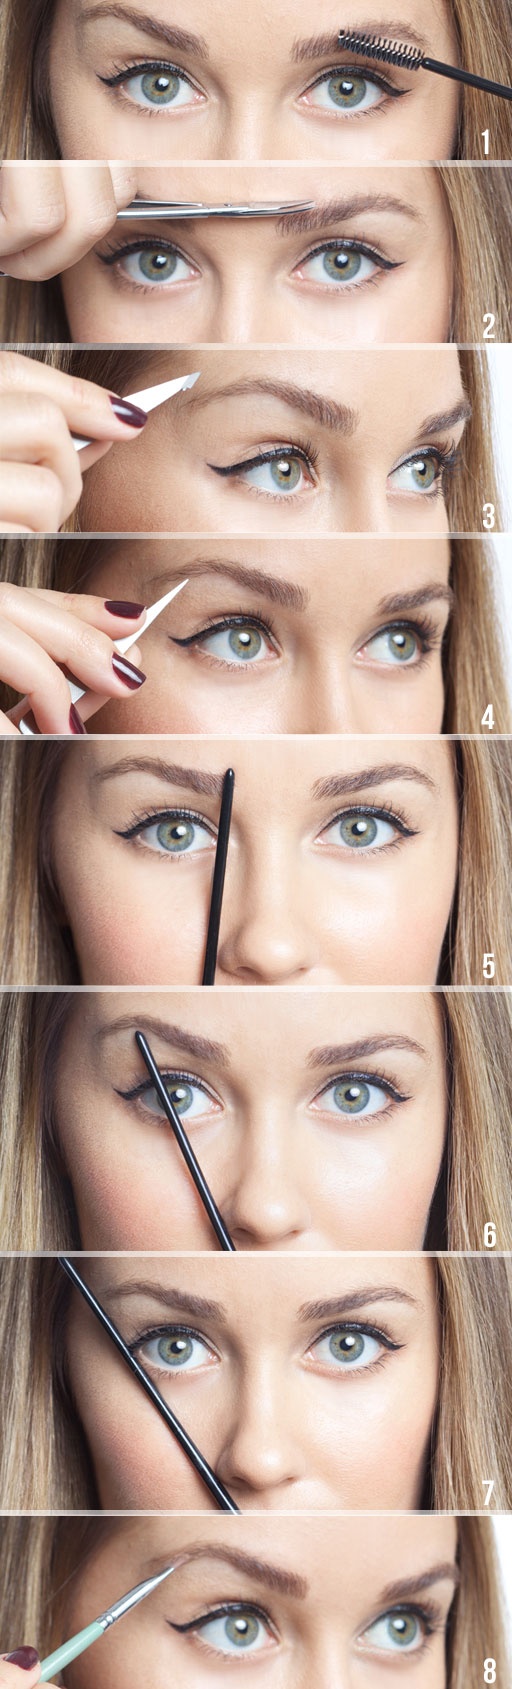 Cómo dar forma y maquillar las cejas, tutoriales paso a paso • Maquillarse  los ojos